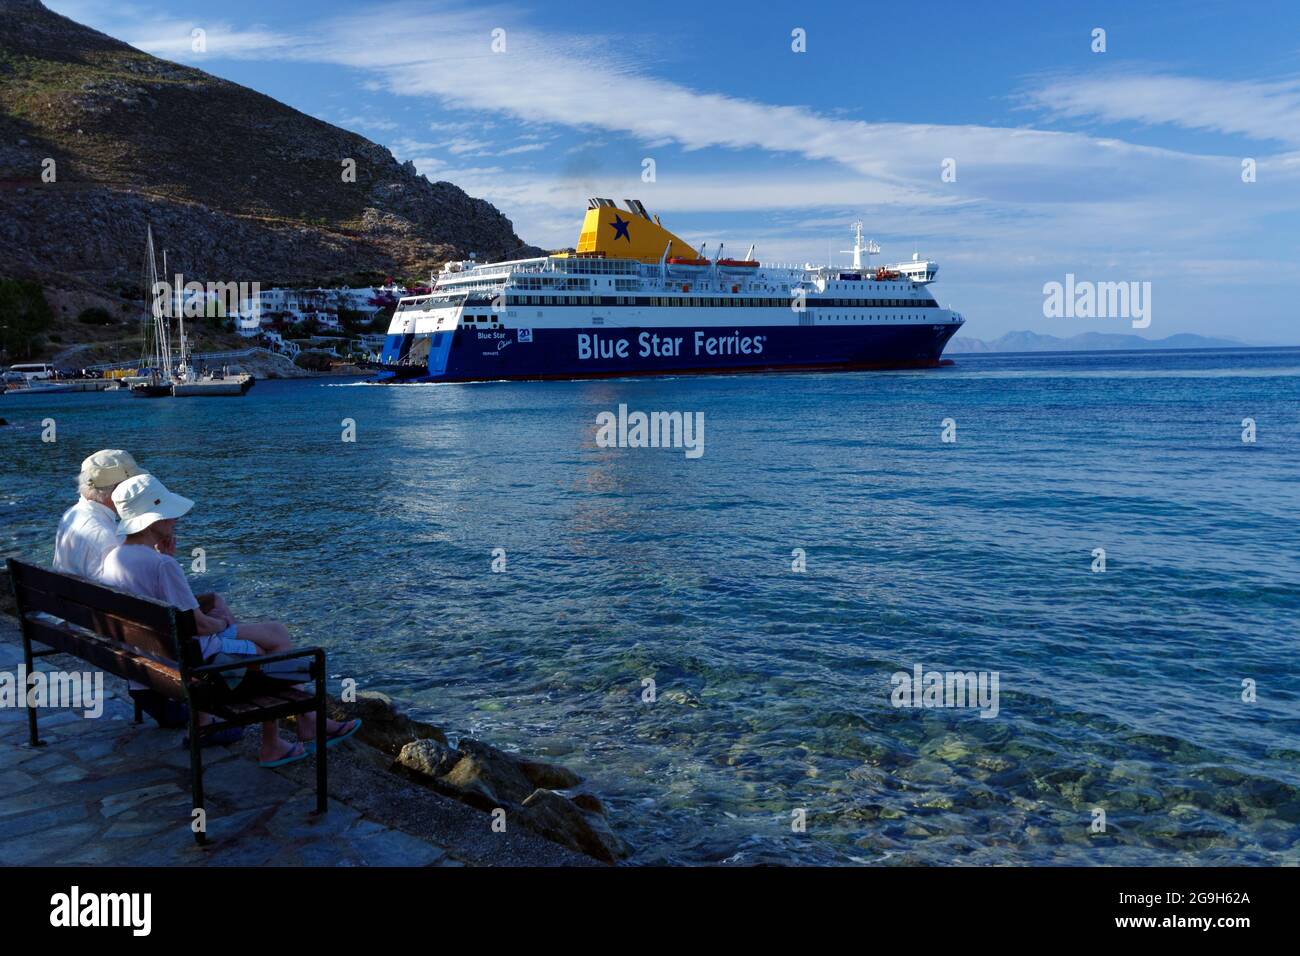 Blue Star Ferries navire le Chios arrivant à Tilos, îles Dodécanèse, sud de la mer Égée, Grèce. Banque D'Images